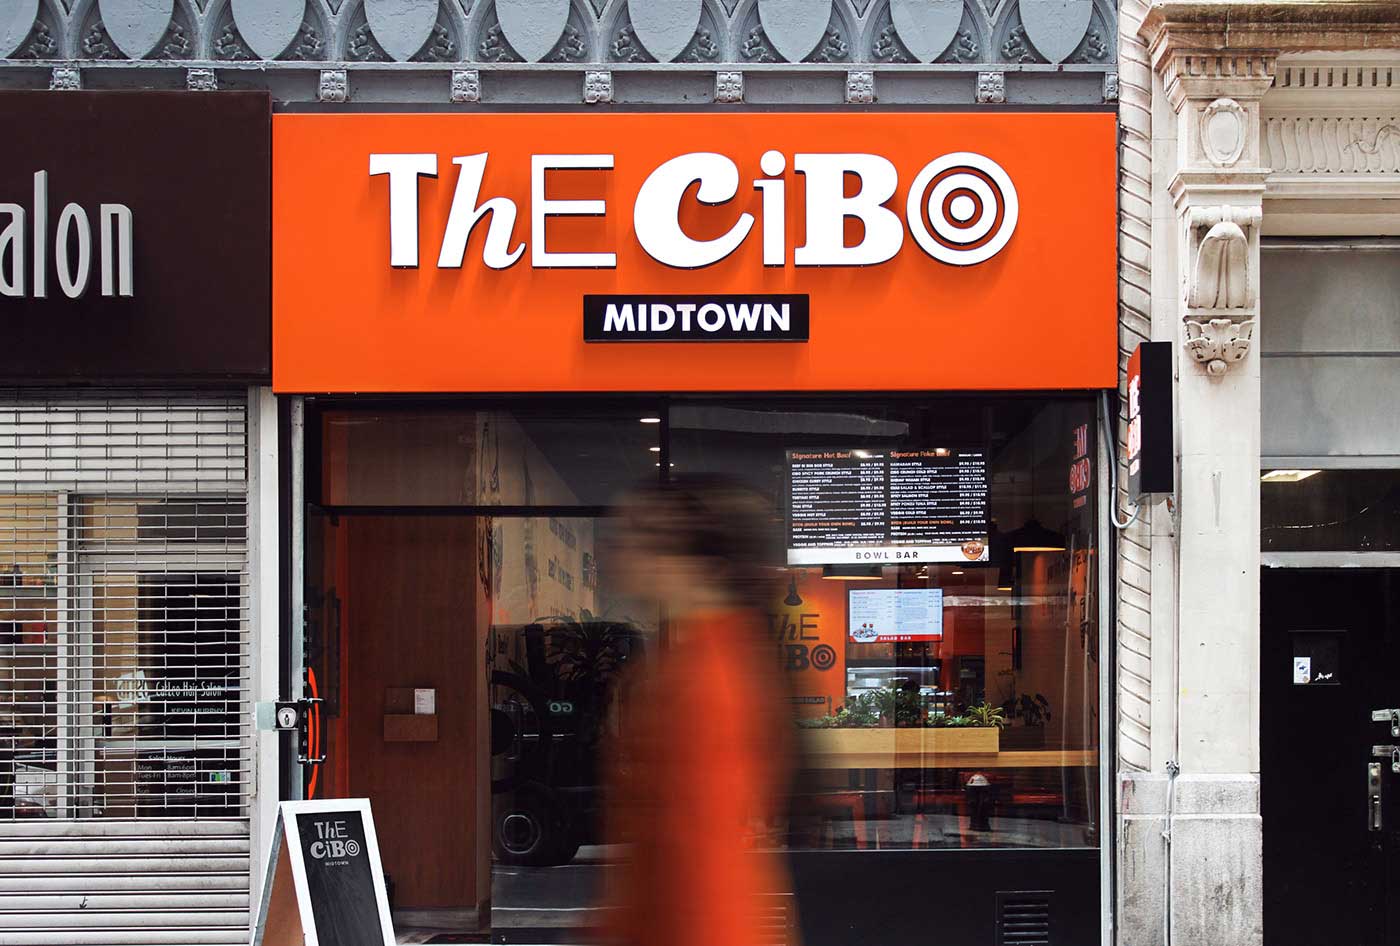 The Cibo店铺